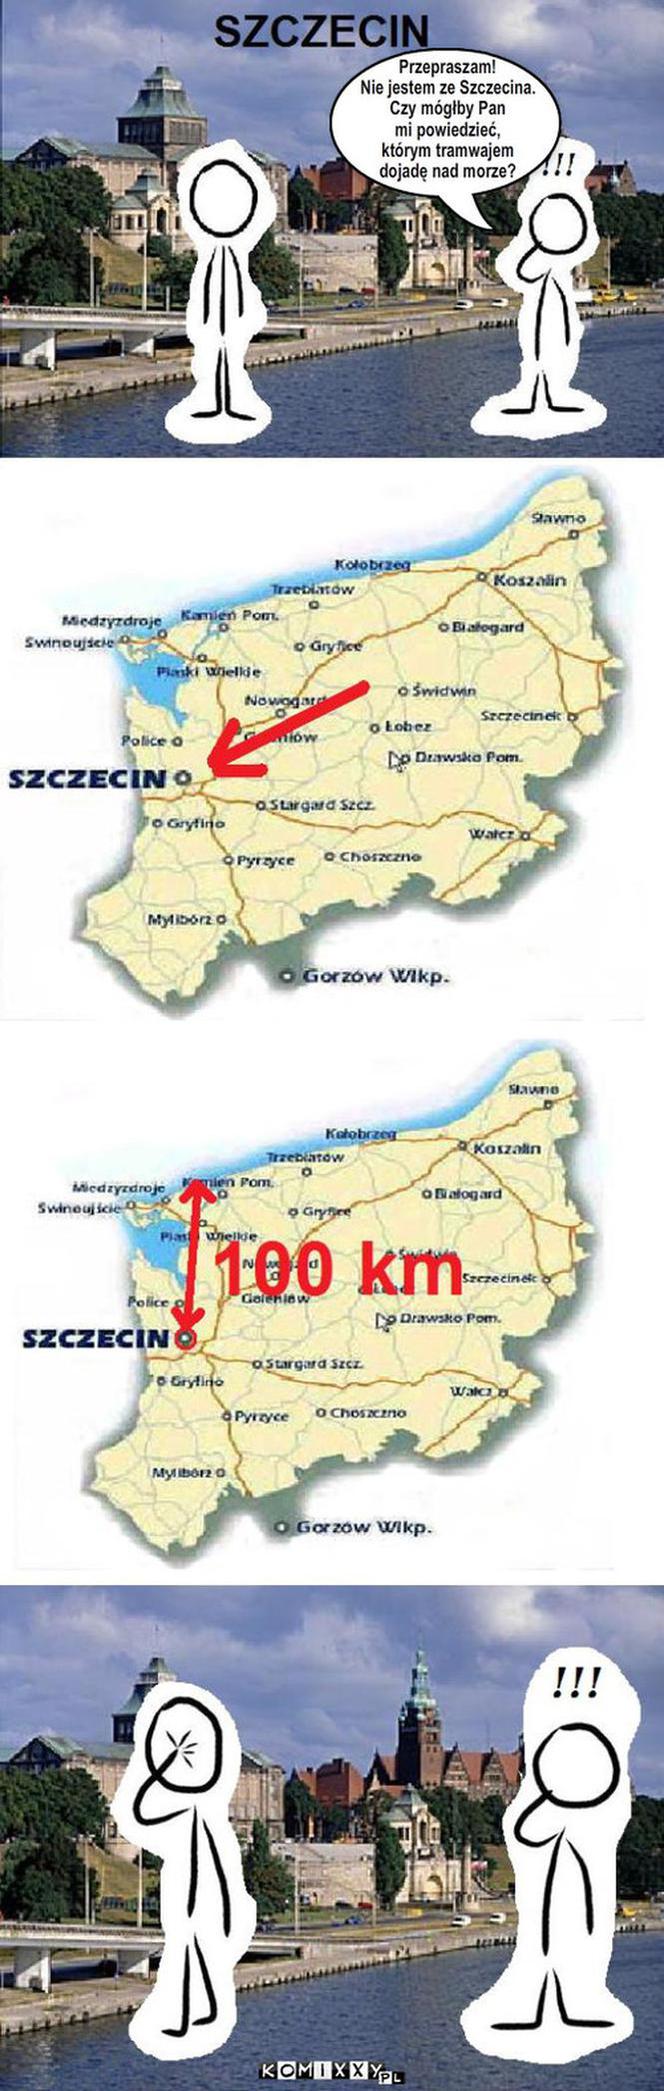 Memy o Szczecinie